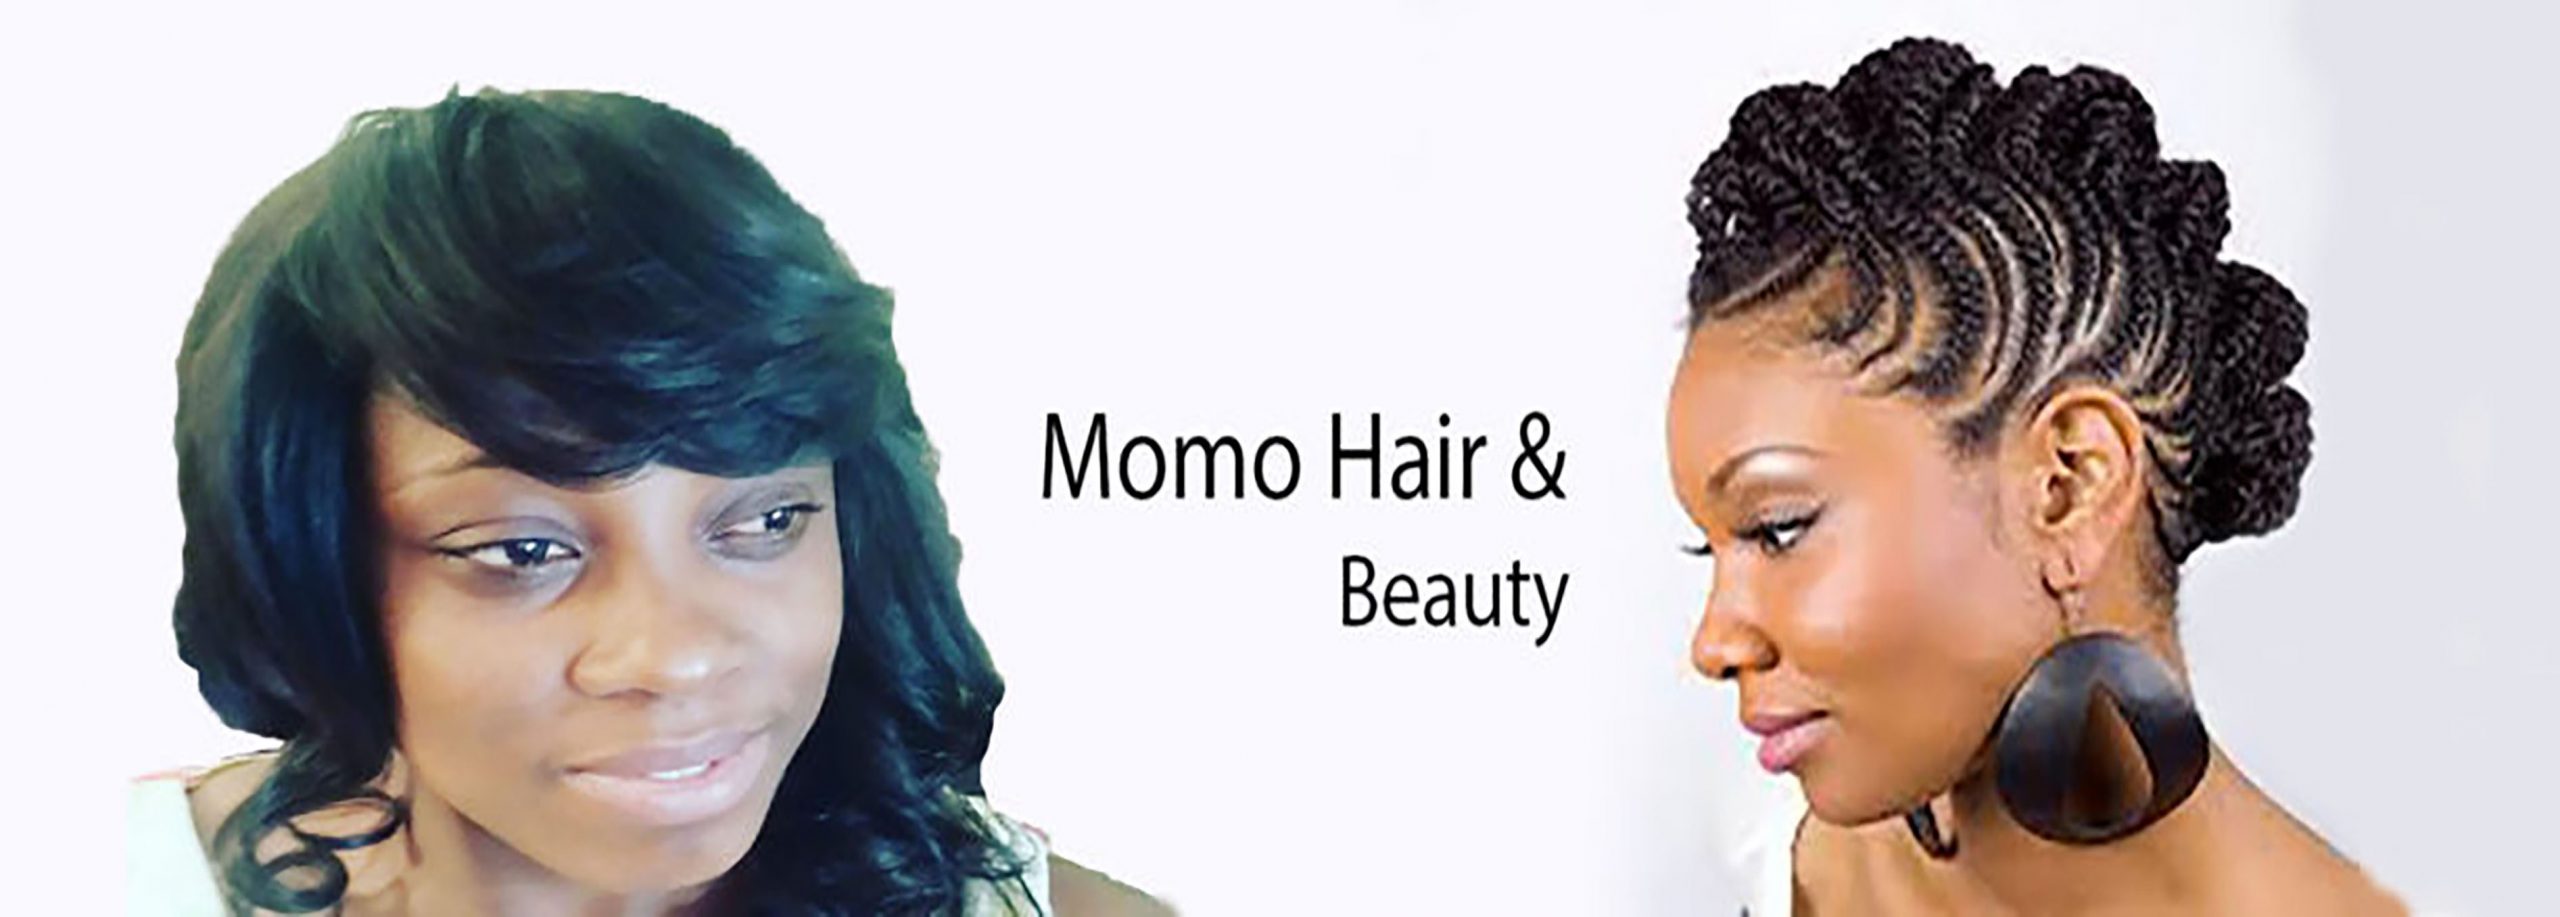 Momo hair and beauty